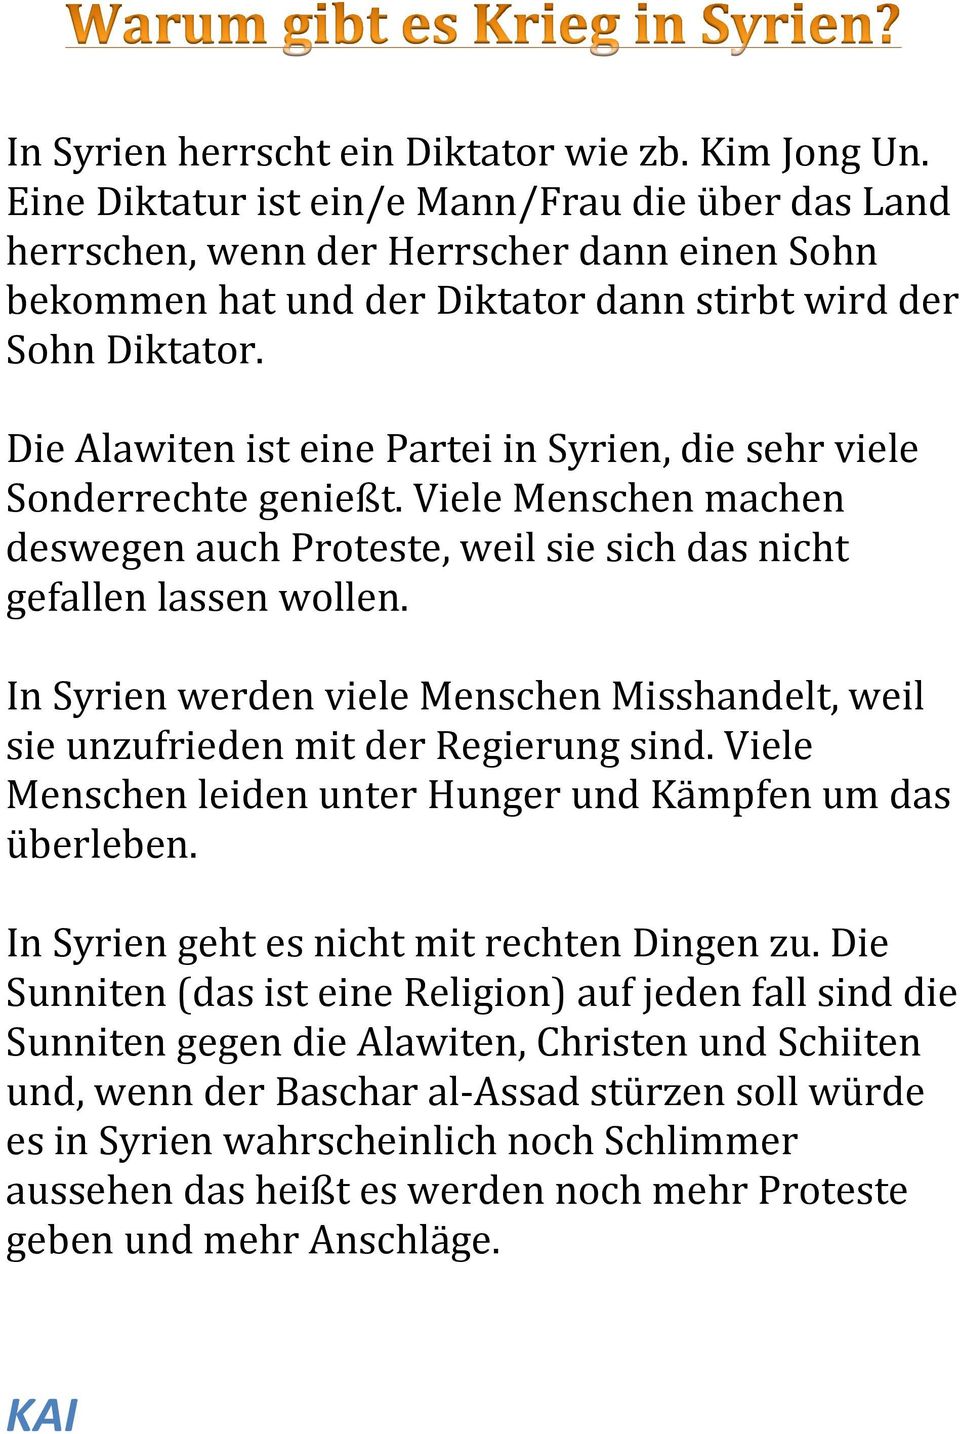 Die Alawiten ist eine Partei in Syrien, die sehr viele Sonderrechte genießt. Viele Menschen machen deswegen auch Proteste, weil sie sich das nicht gefallen lassen wollen.